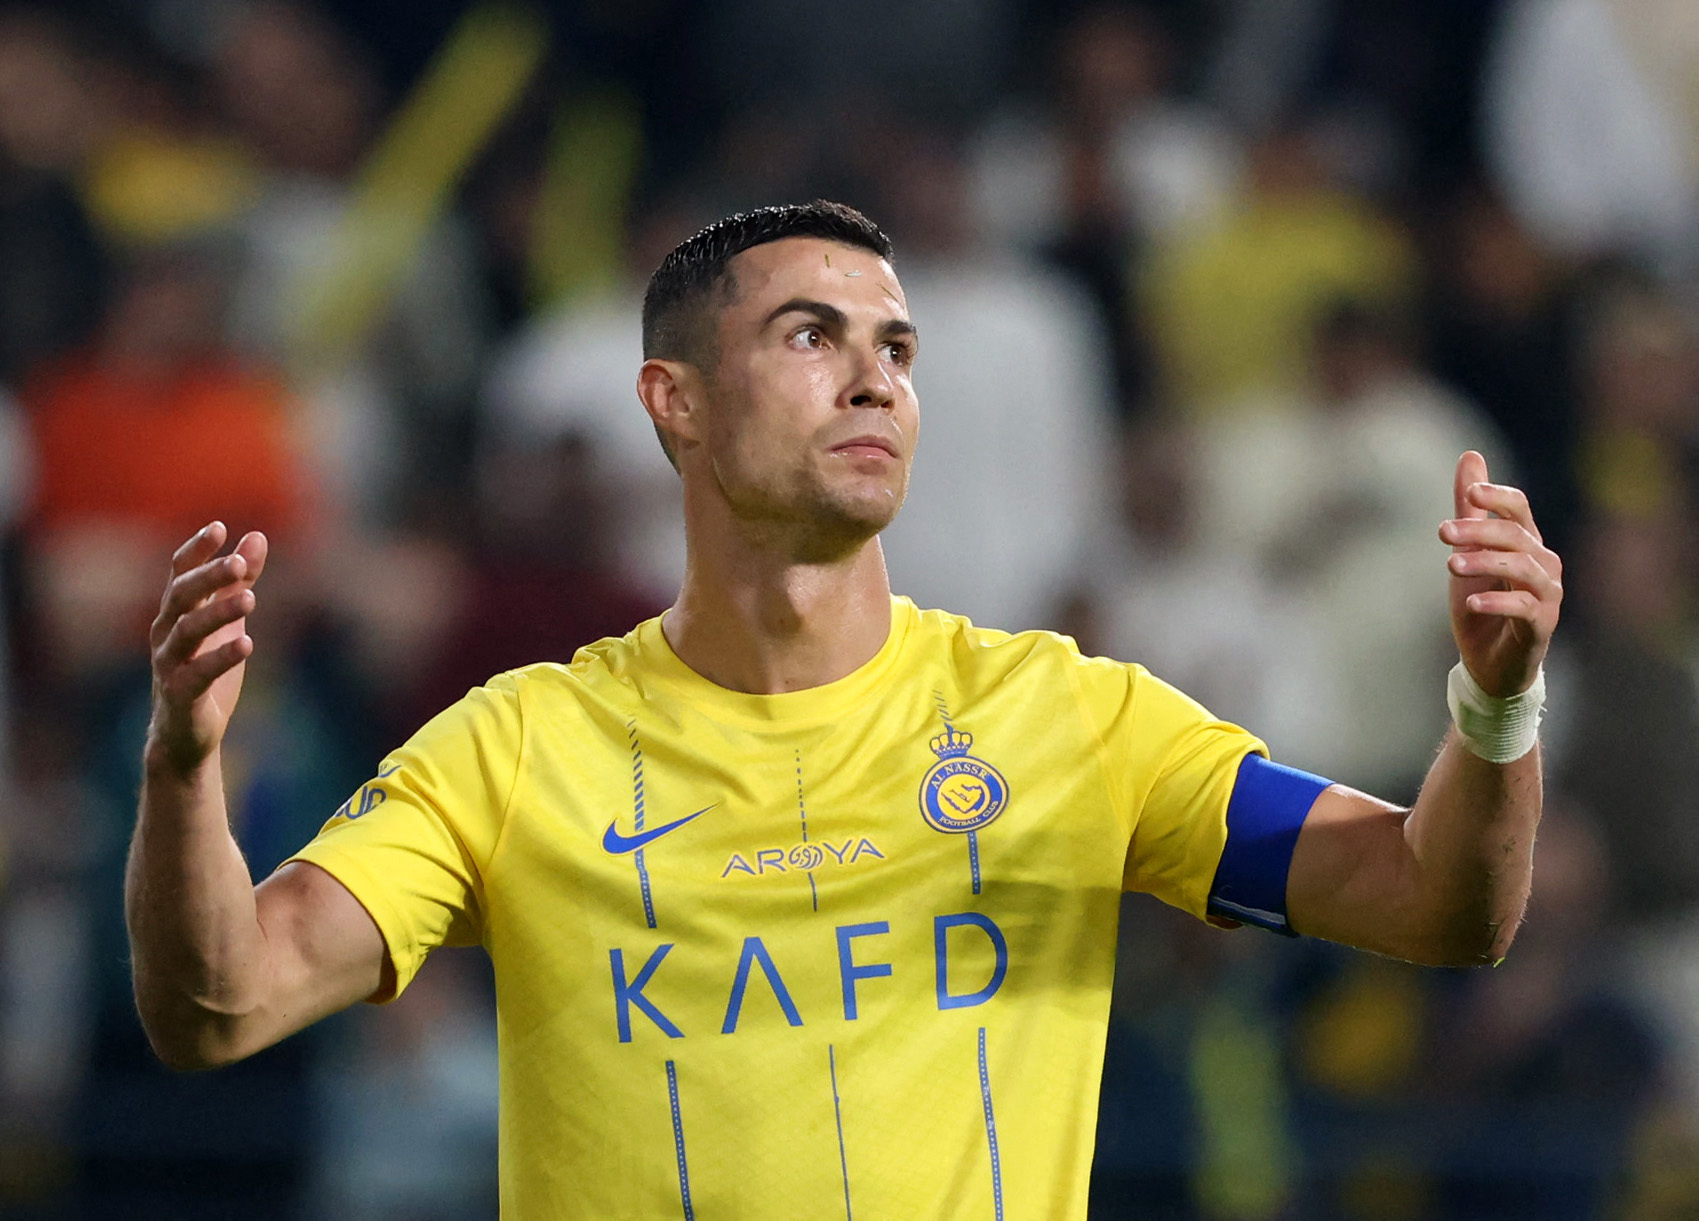 Watch: Ronaldo's sensational match-winning penalty sends Al Nassr to final